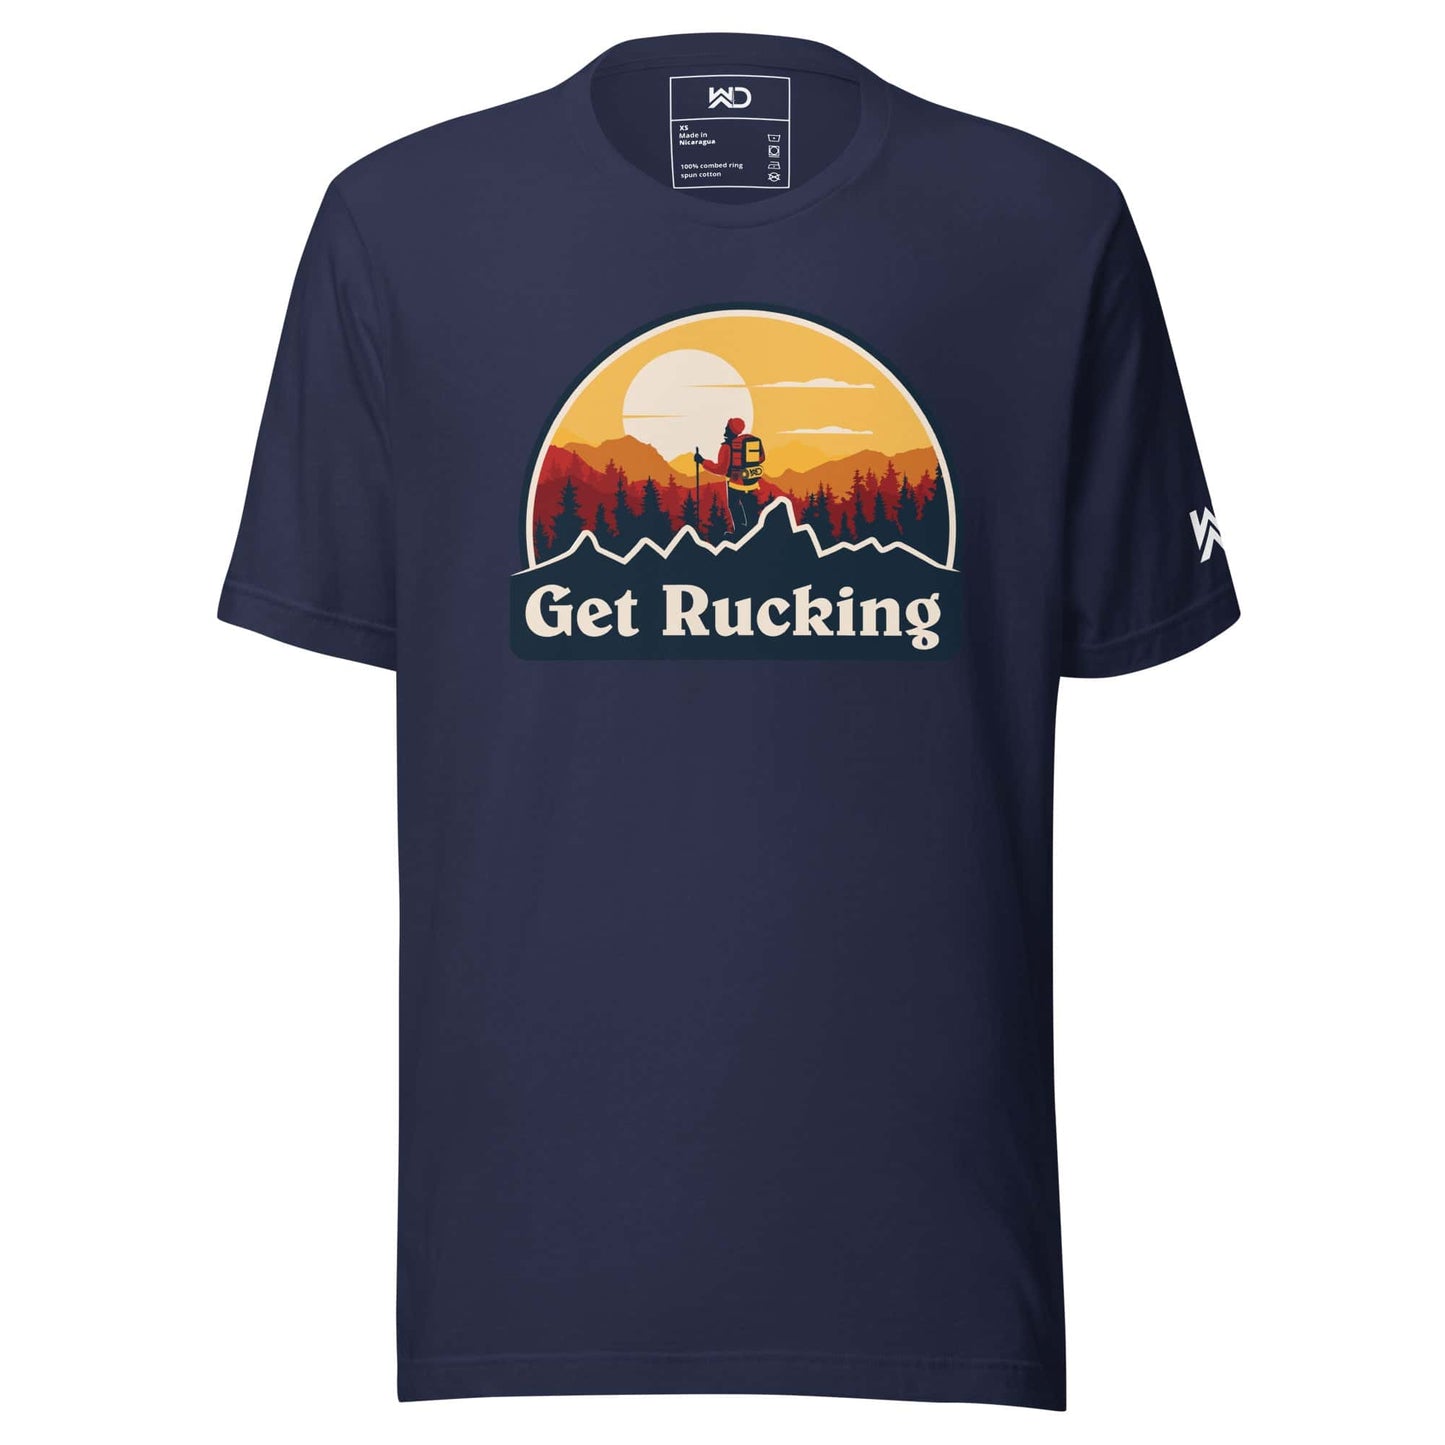 Get Rucking - Unisex t-shirt